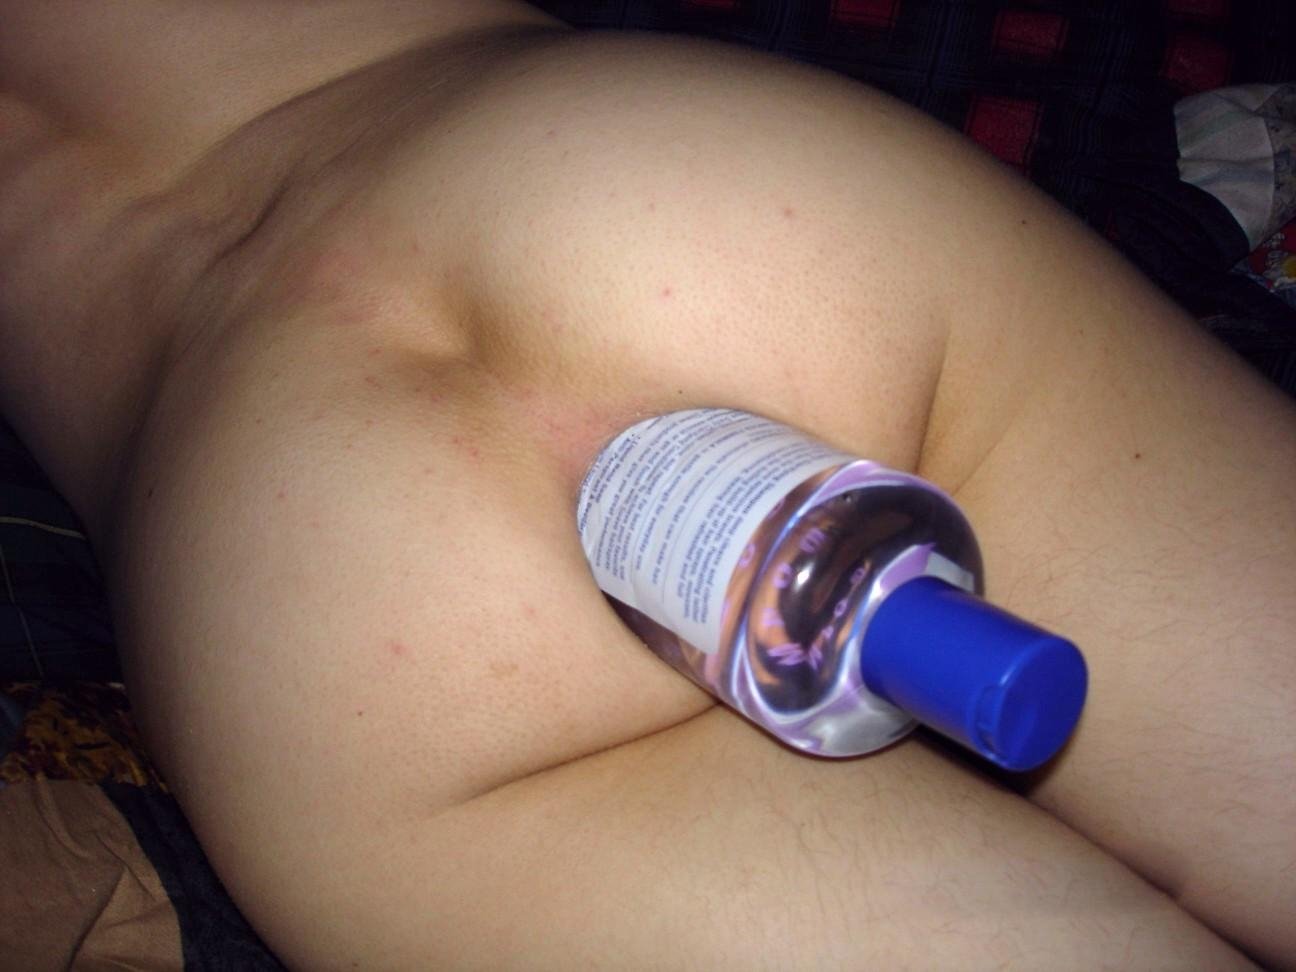 Дезодорант в анусе соседки фото